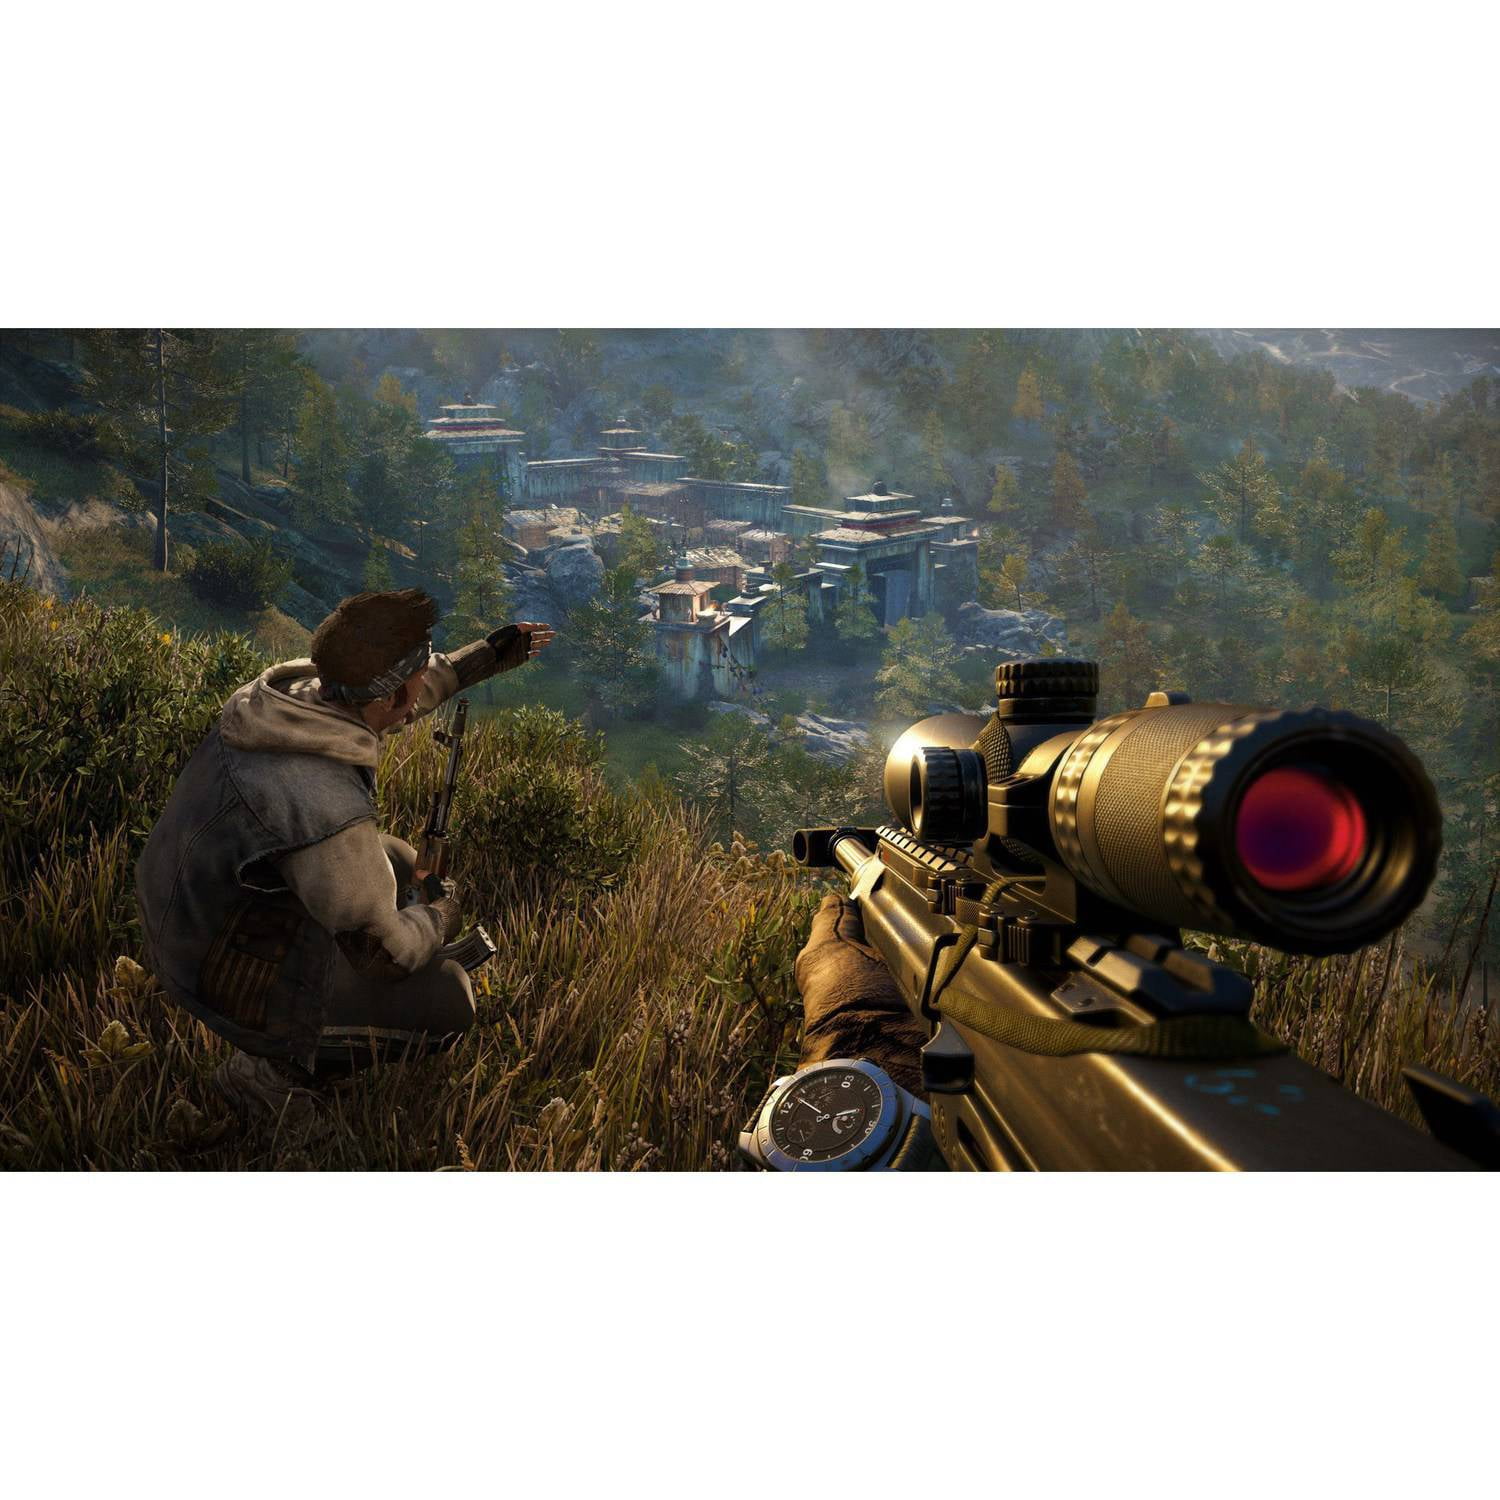 Game Sniper Elite 3: Ultimate Edition - PS4 em Promoção na Americanas